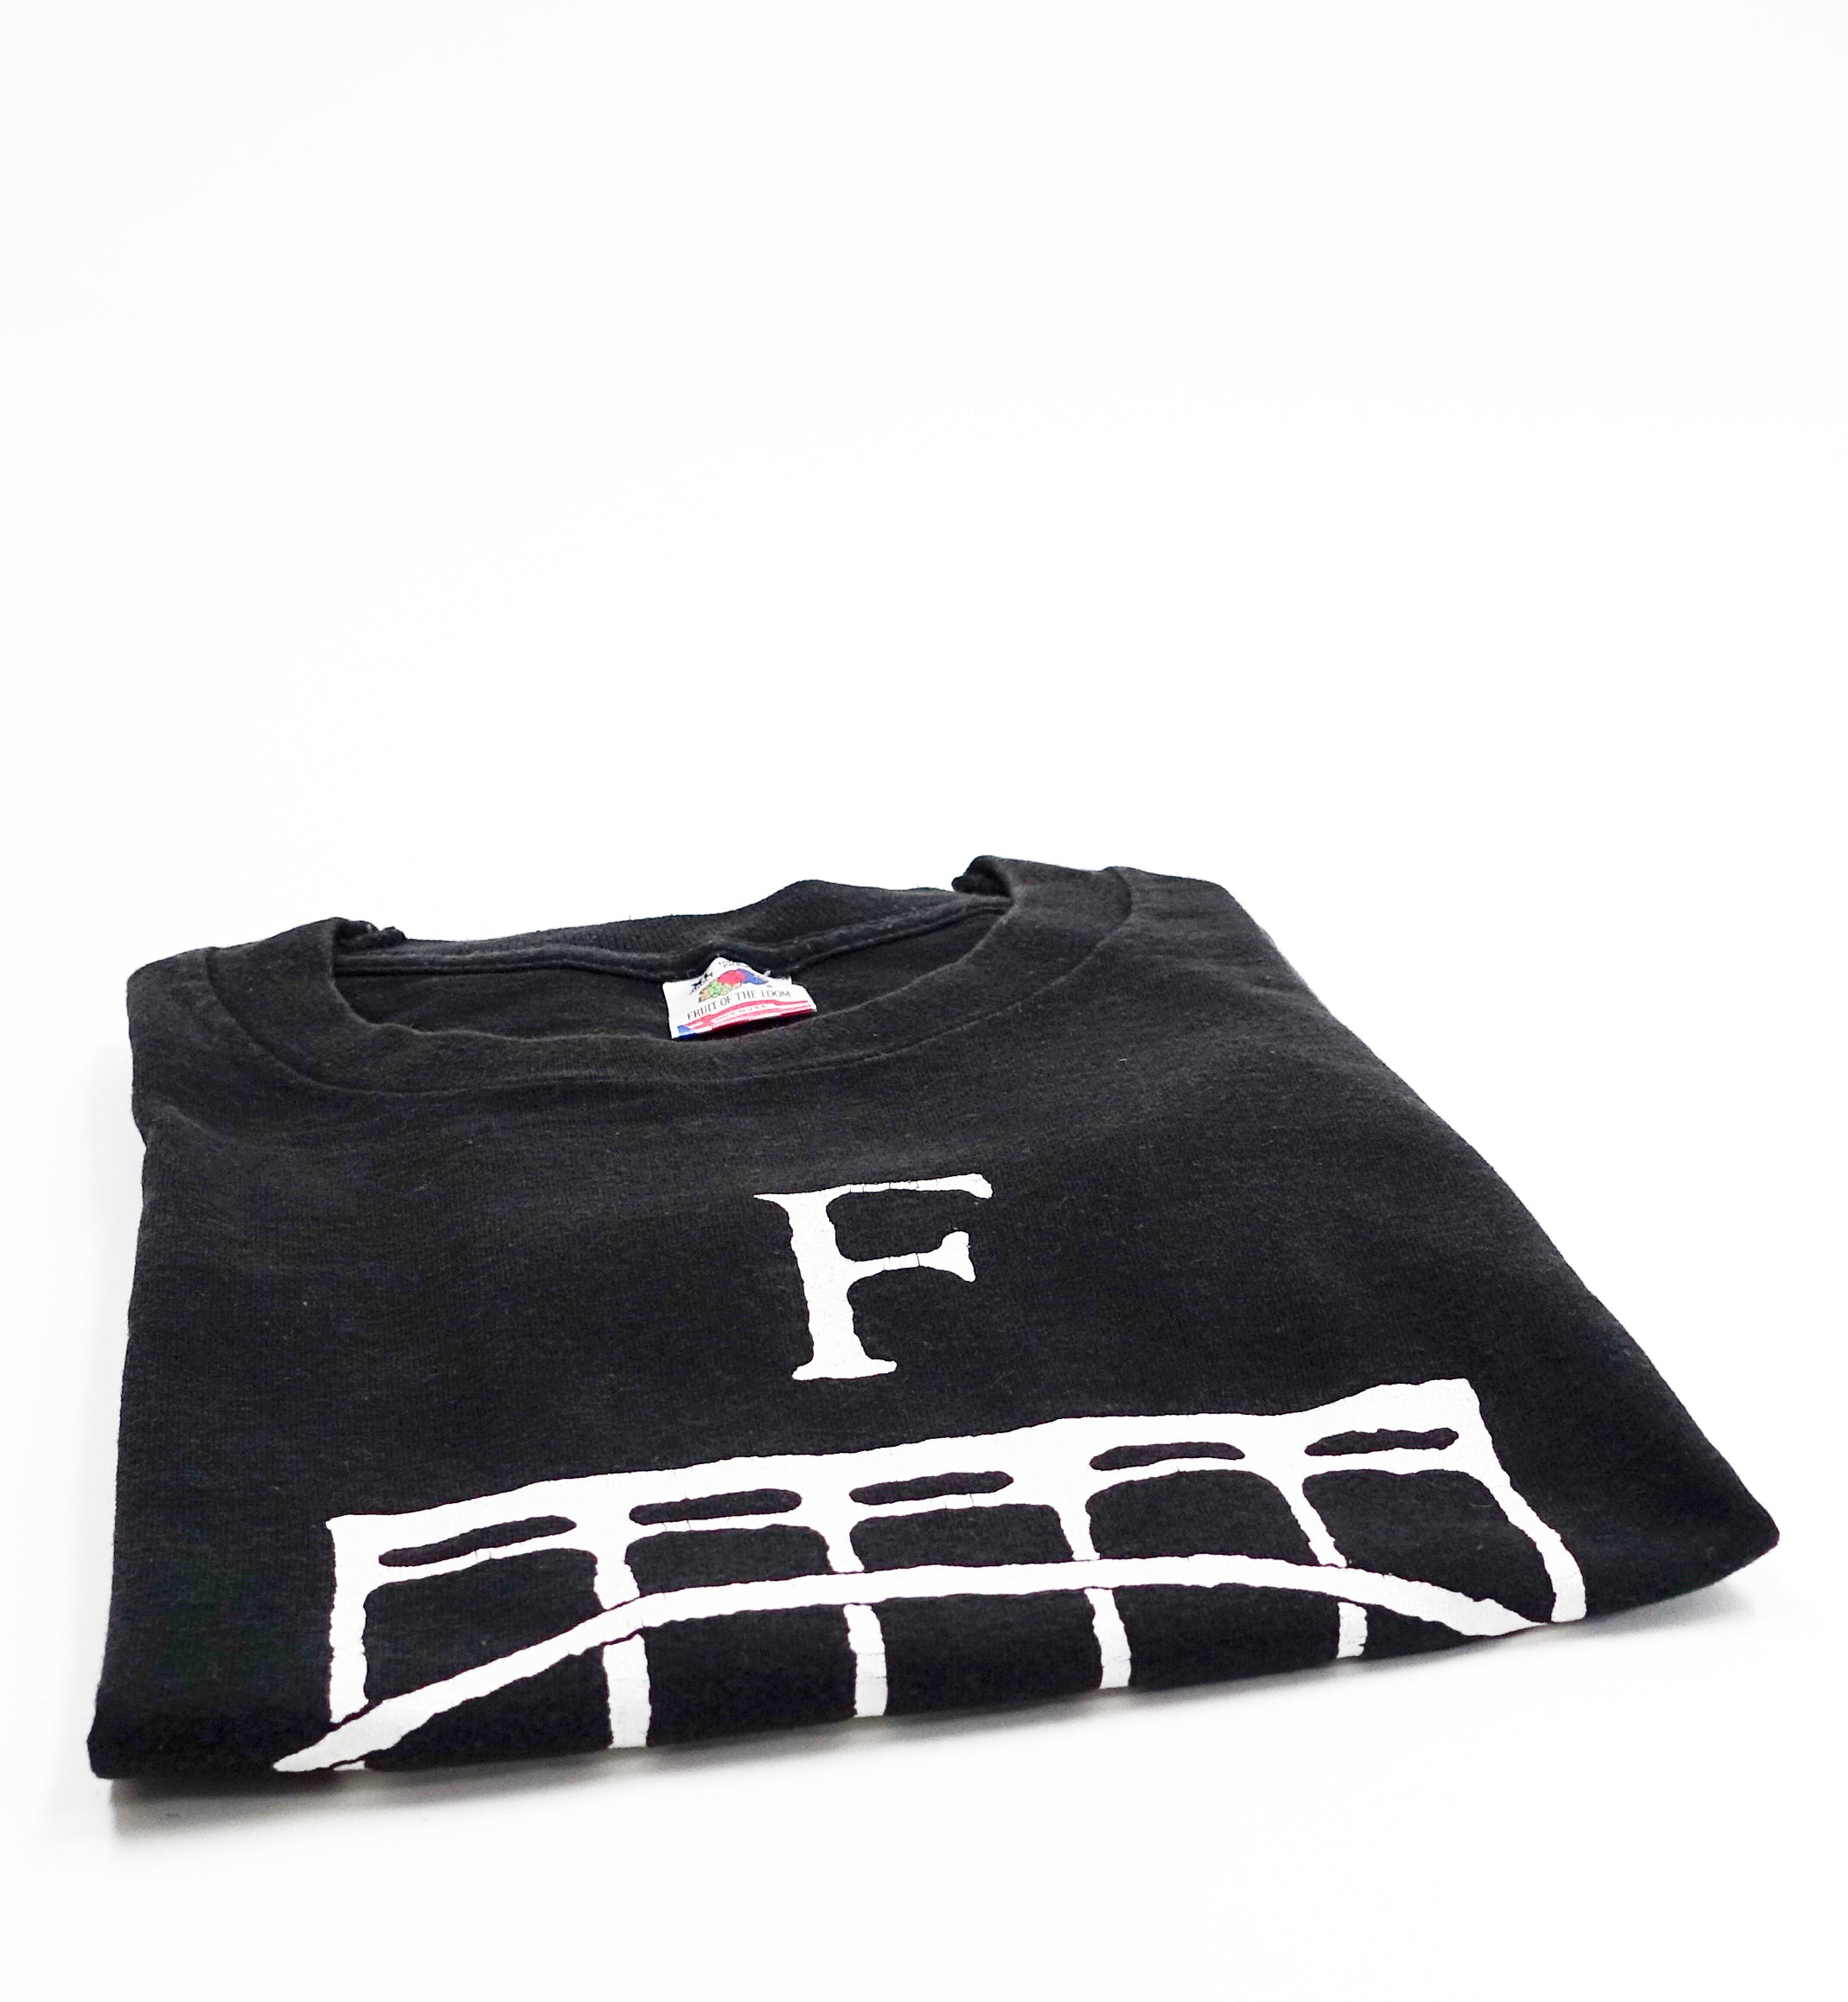 Fastbacks ‎– 8 Fret 90's Tour Shirt Size XL